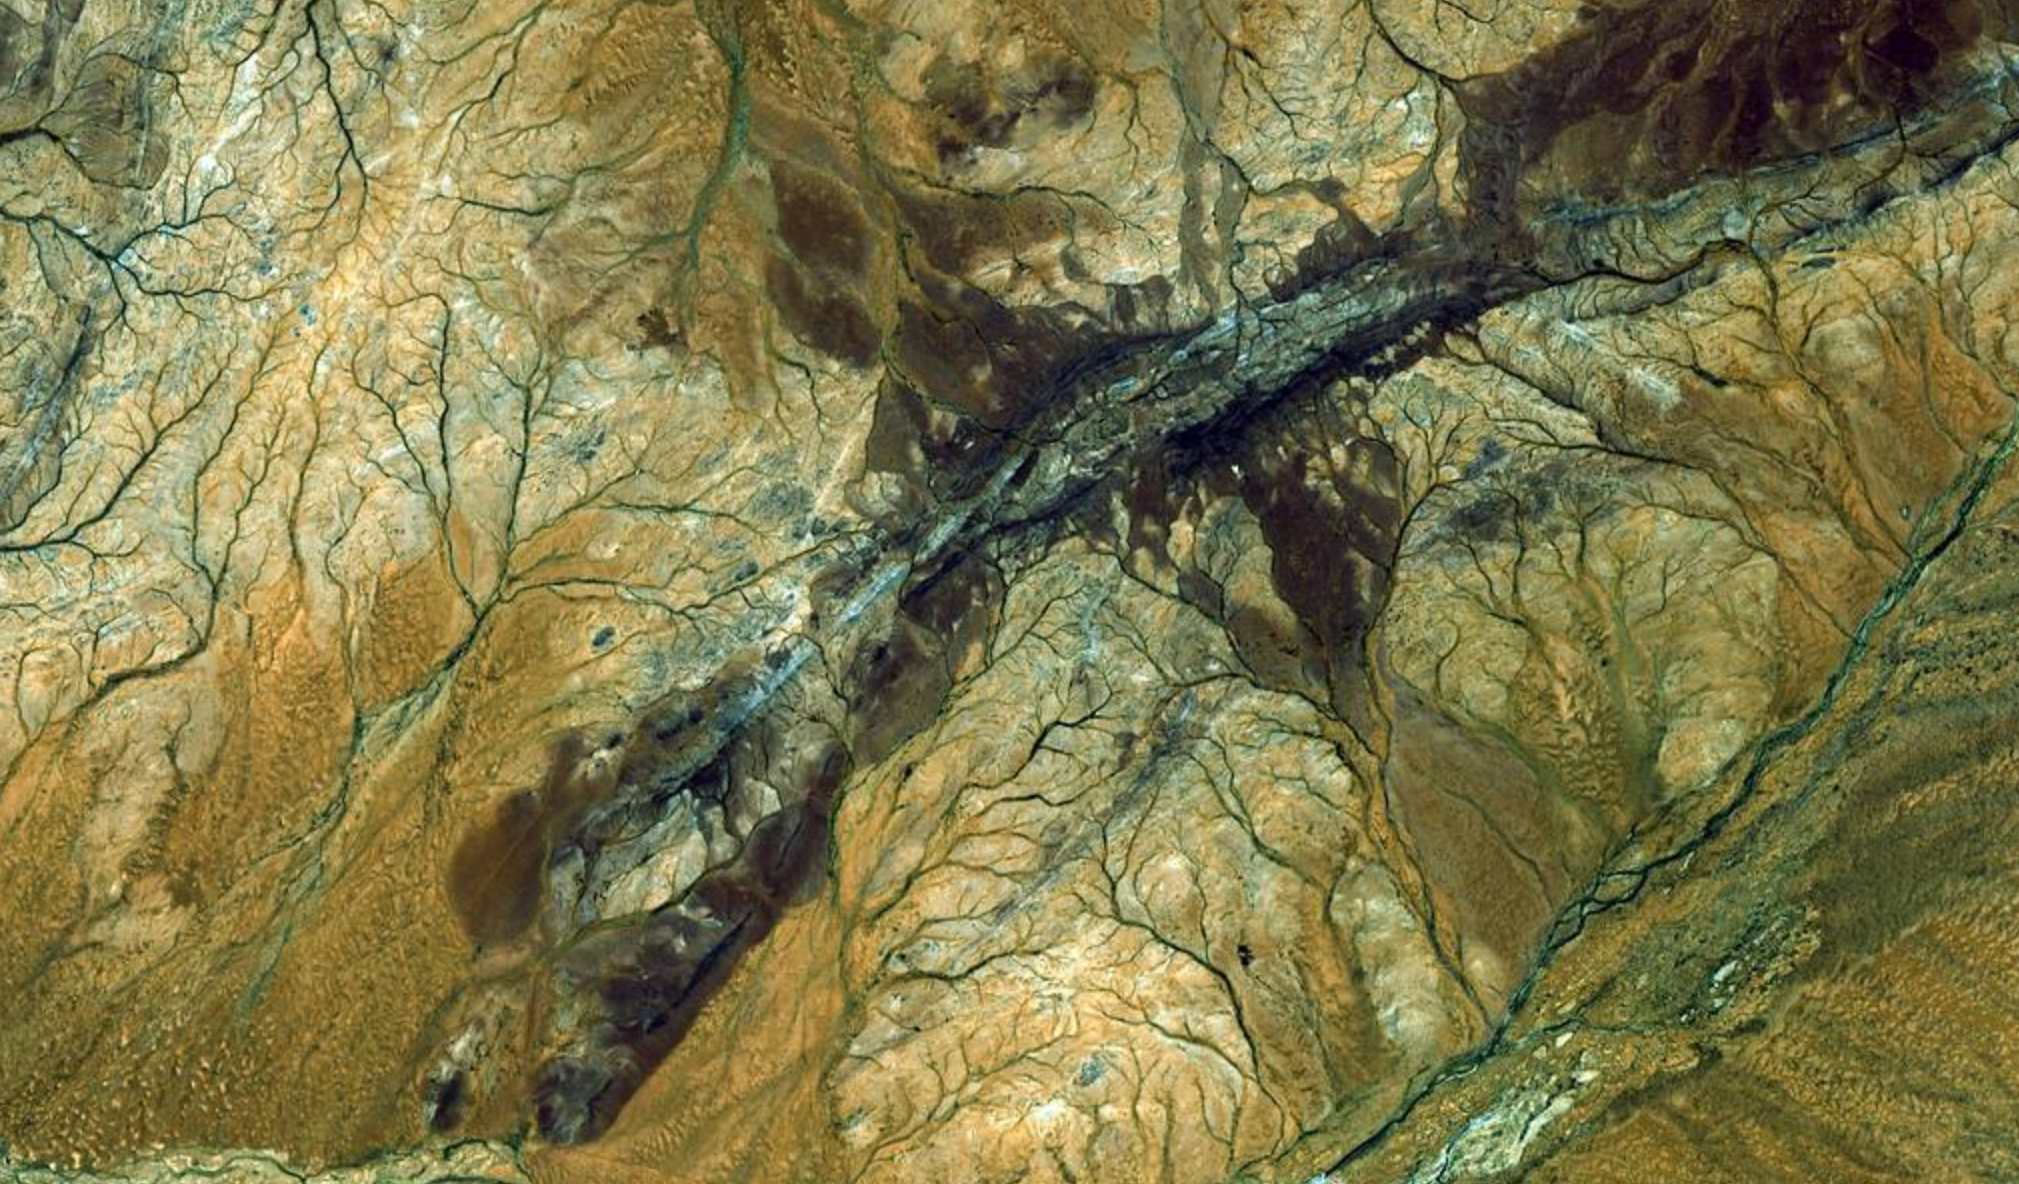 Najstariji materijal na Zemlji koji je datiran je mineral cirkon star 4,4 milijarde godina iz sedimentnog gnajsa Jack Hillsa u teranu Narre Gneiss u Australiji. To je najstariji poznati fragment Zemljine kore, formiran približno 150 milijuna godina nakon nastanka planeta. Zasluge: NASA.